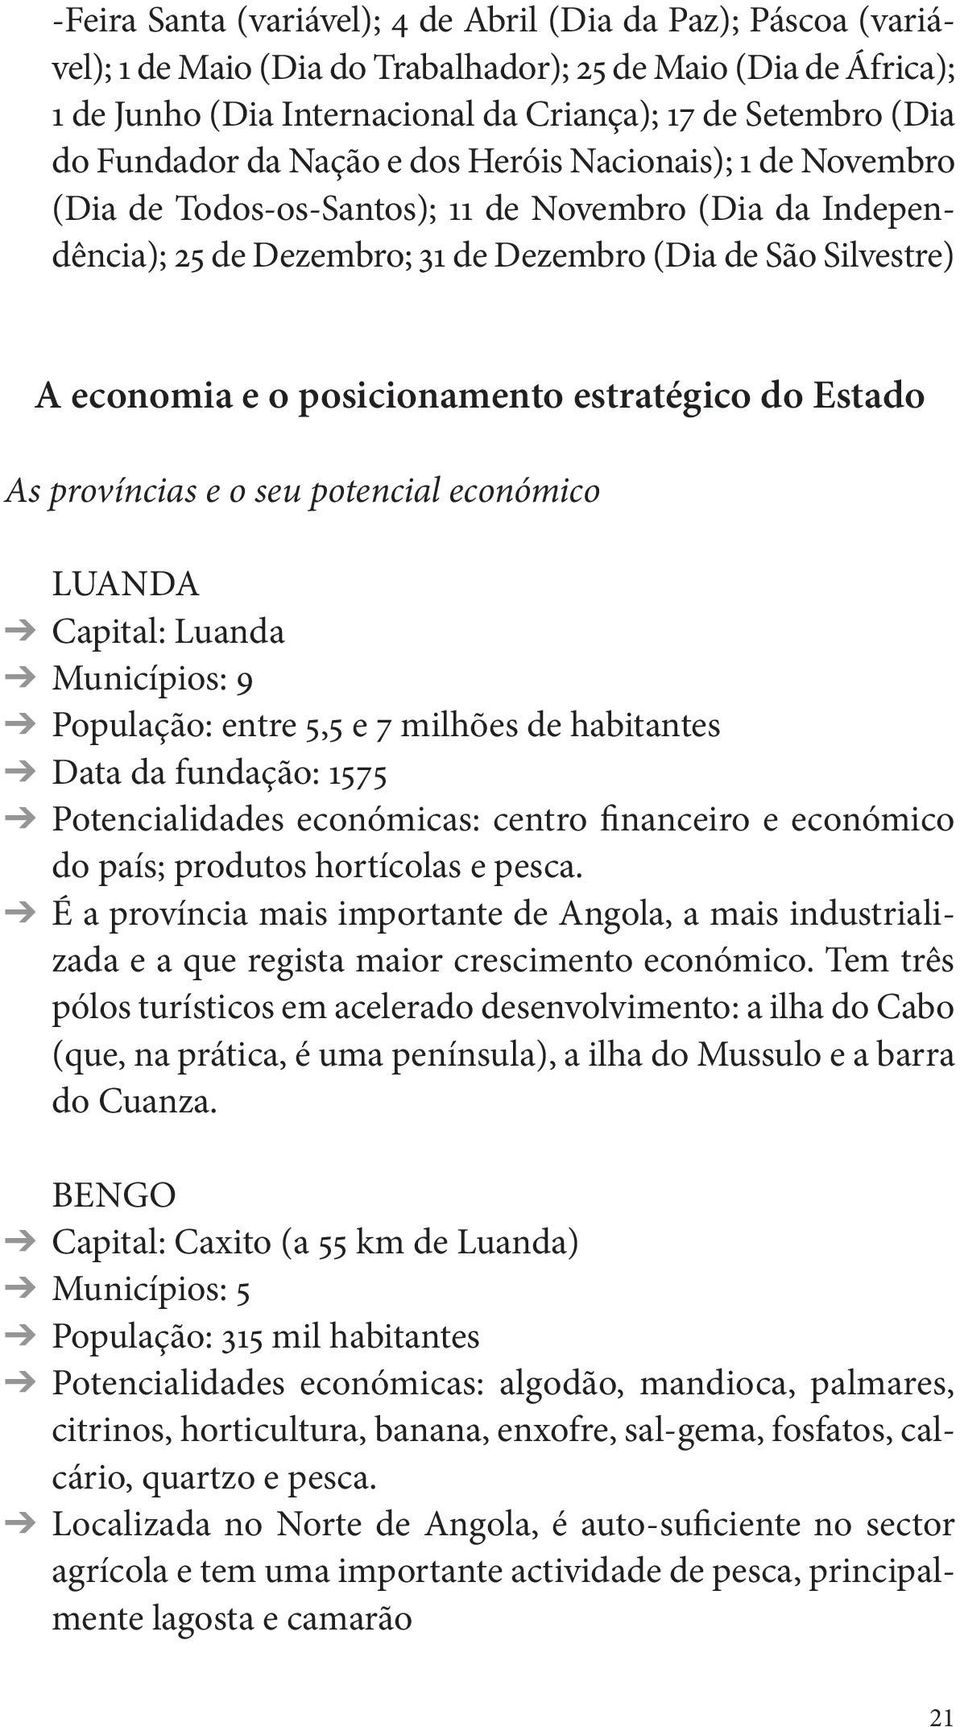 posicionamento estratégico do Estado As províncias e o seu potencial económico LUANDA Capital: Luanda Municípios: 9 População: entre 5,5 e 7 milhões de habitantes Data da fundação: 1575